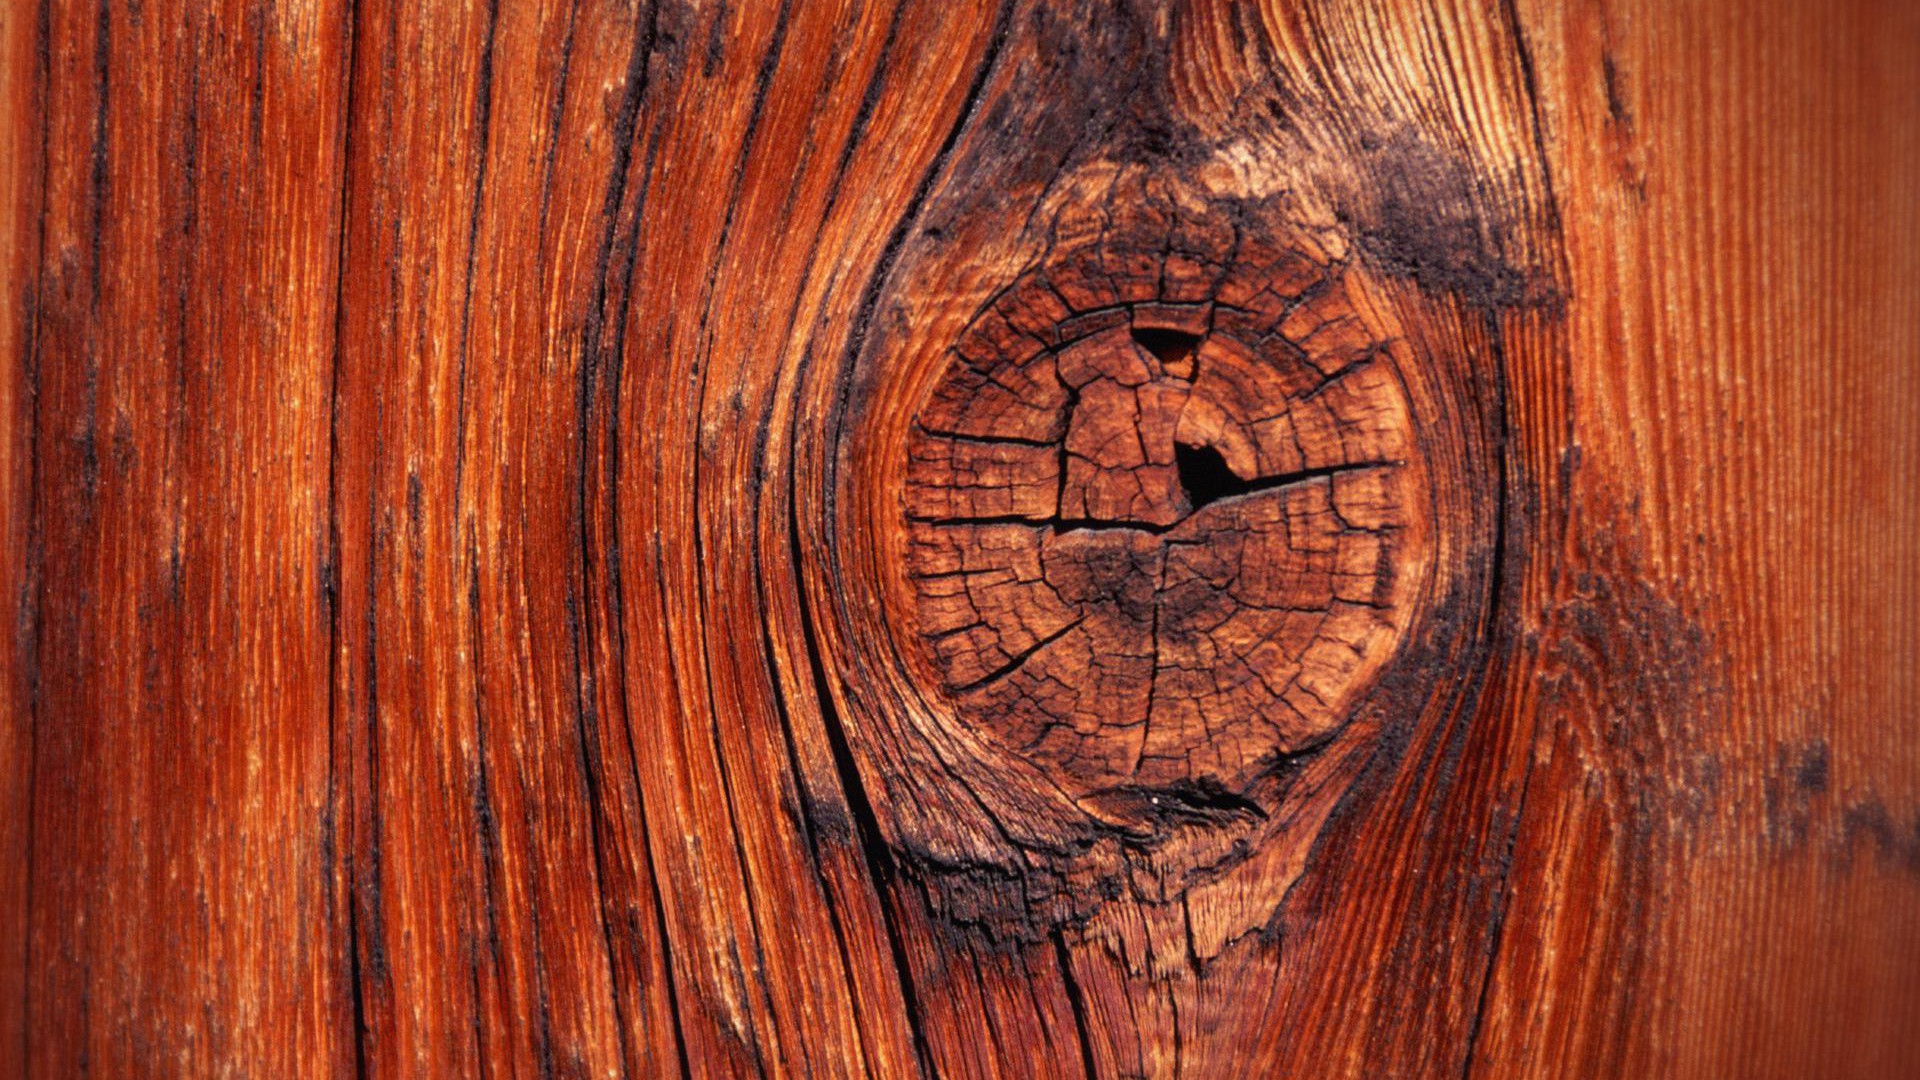 Hình nền gỗ: Hình nền gỗ đang là xu hướng hot nhất hiện nay trong việc trang trí không gian làm việc hay sinh hoạt. Với những màu sắc tươi sáng và họa tiết độc đáo, hình nền gỗ giúp cho không gian của bạn trở nên ấm áp và đẹp hơn.